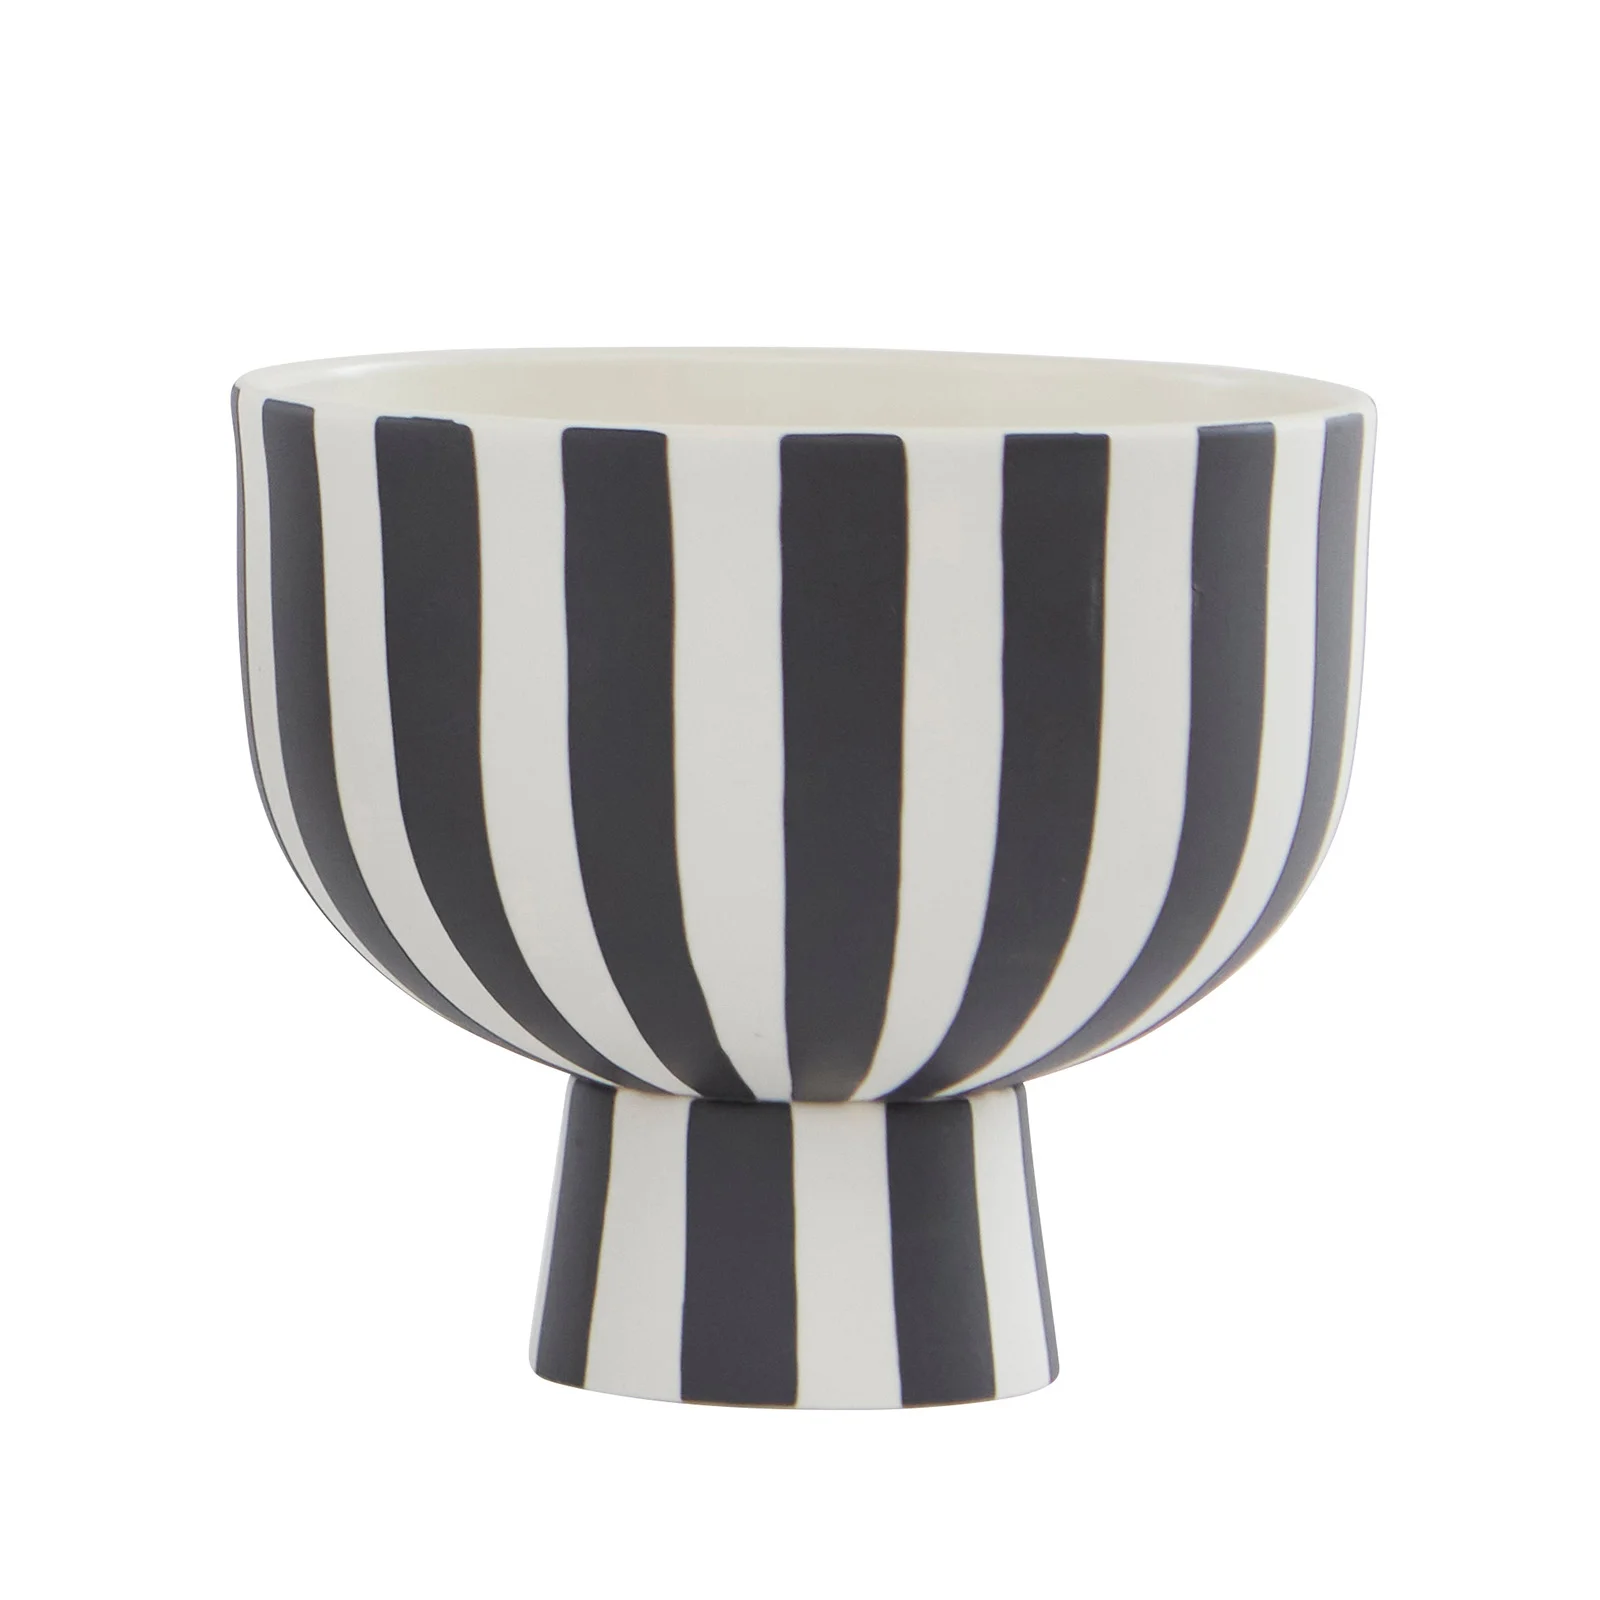 OYOY Toppu Bowl - White/Black Image 1